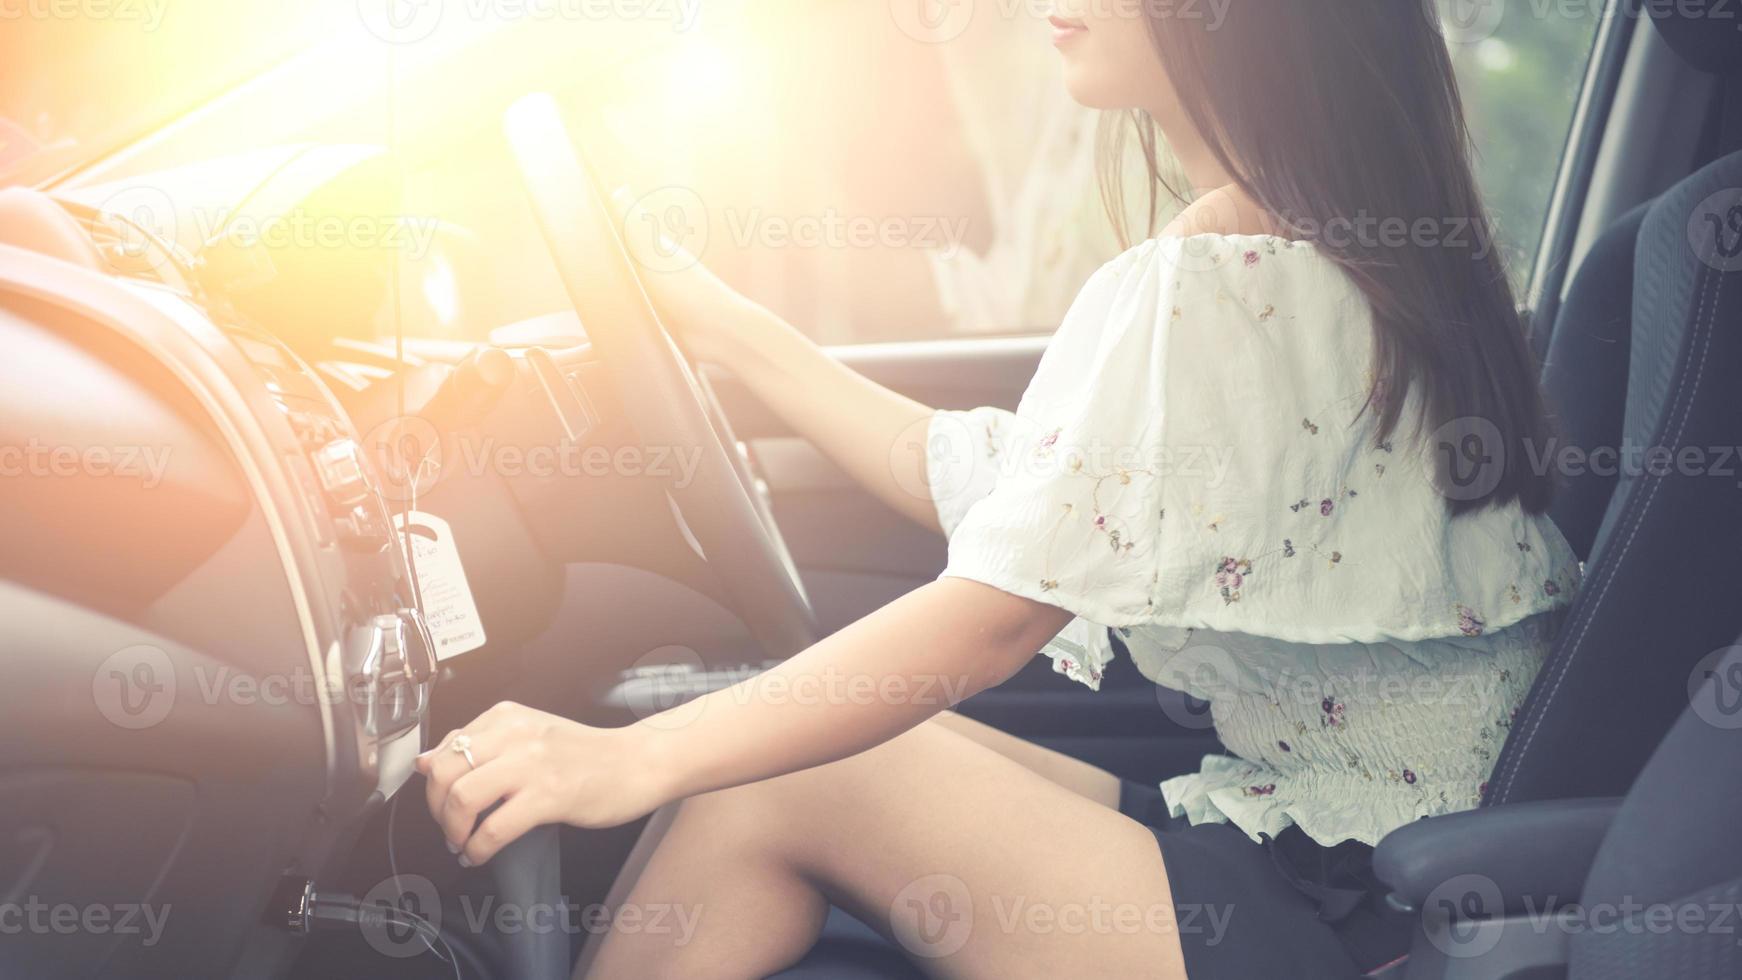 hermosa joven con una bonita sonrisa conduciendo un coche. vista trasera. foto